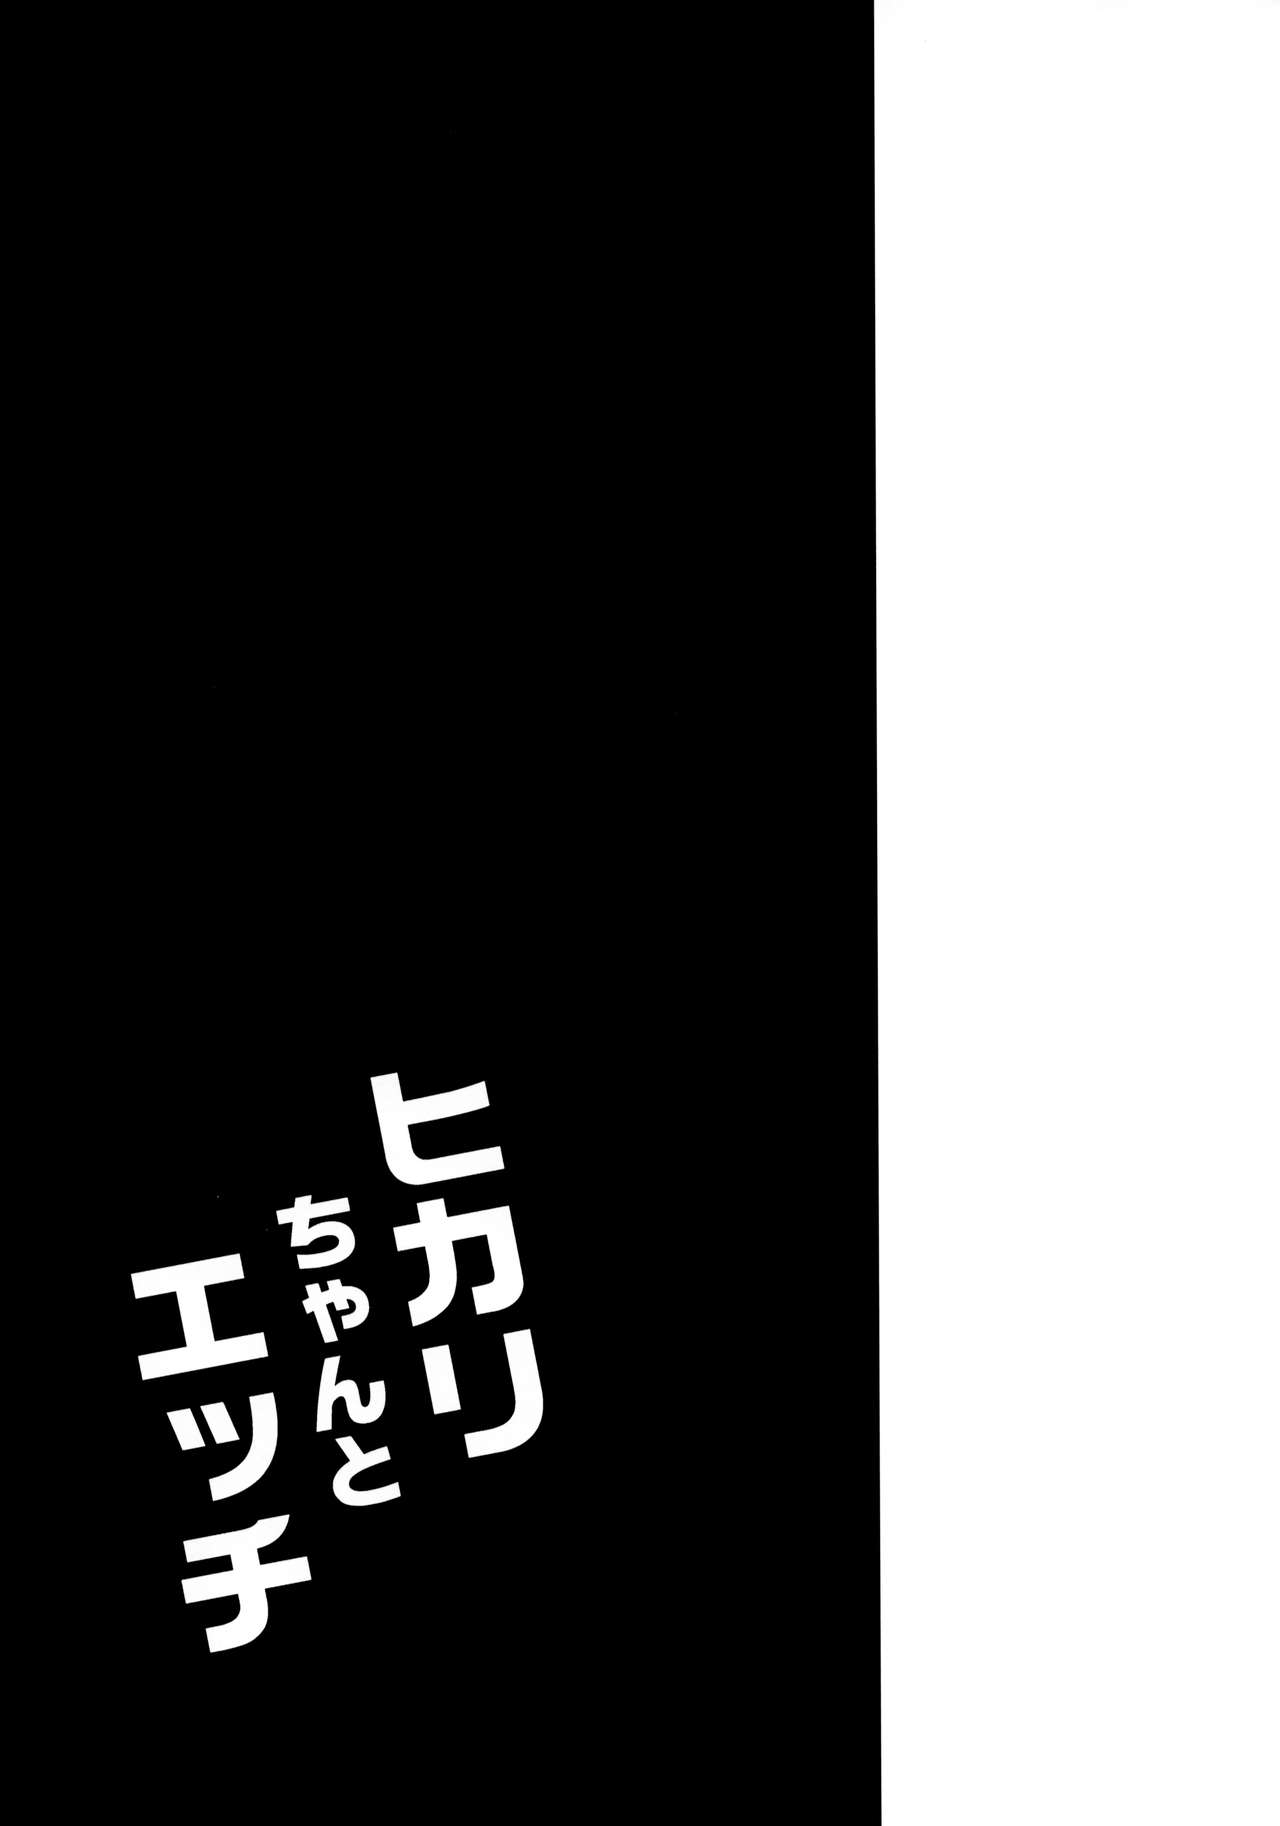 (COMIC1☆15) [Garimpeiro (まめでんきゅう)] ヒカリちゃんとエッチ (ゼノブレイド2) [英訳]